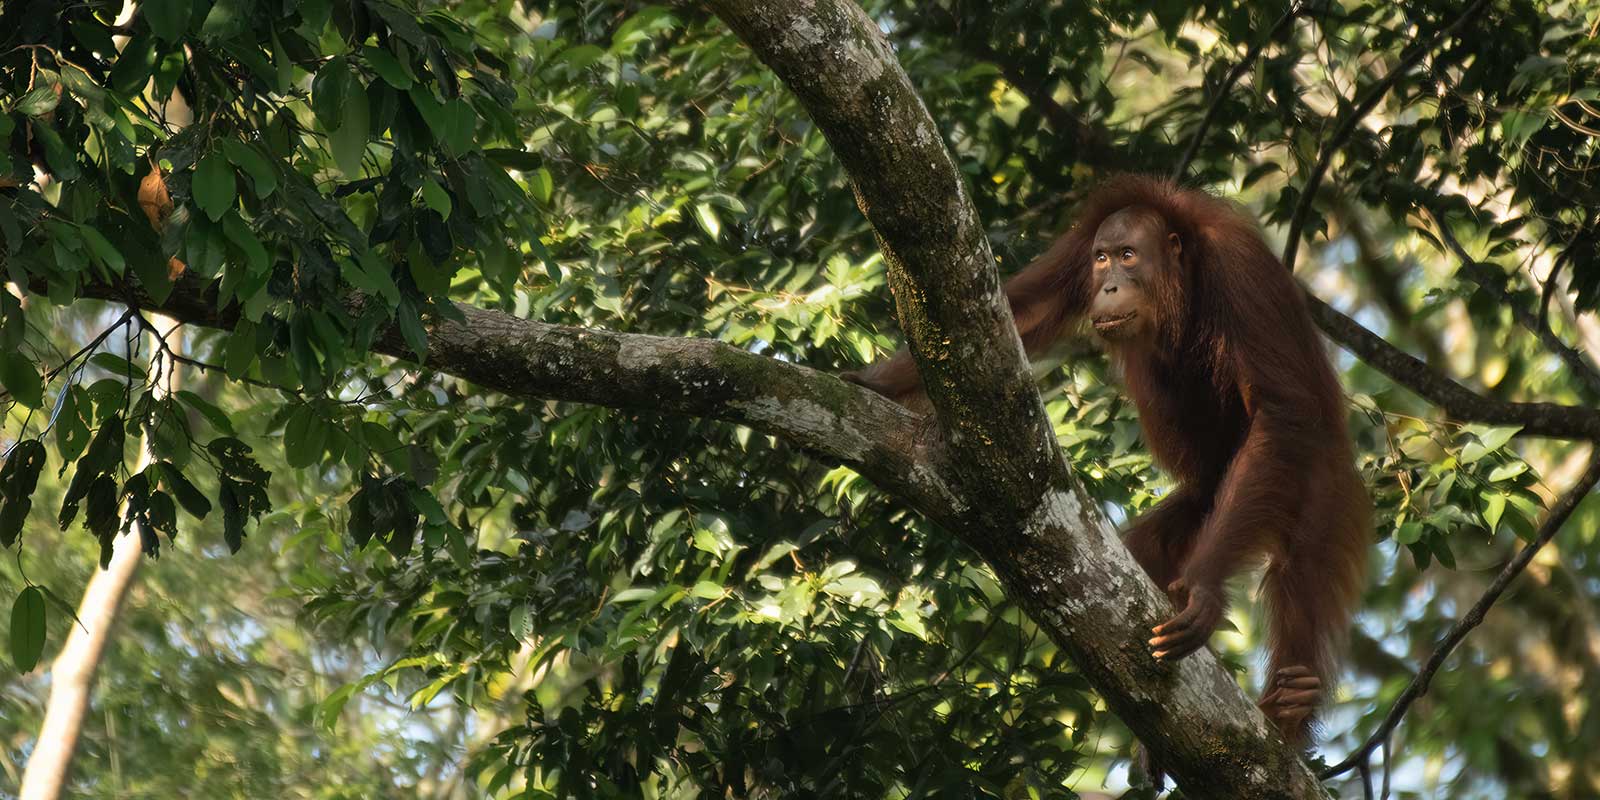 Orangutan in Borneo